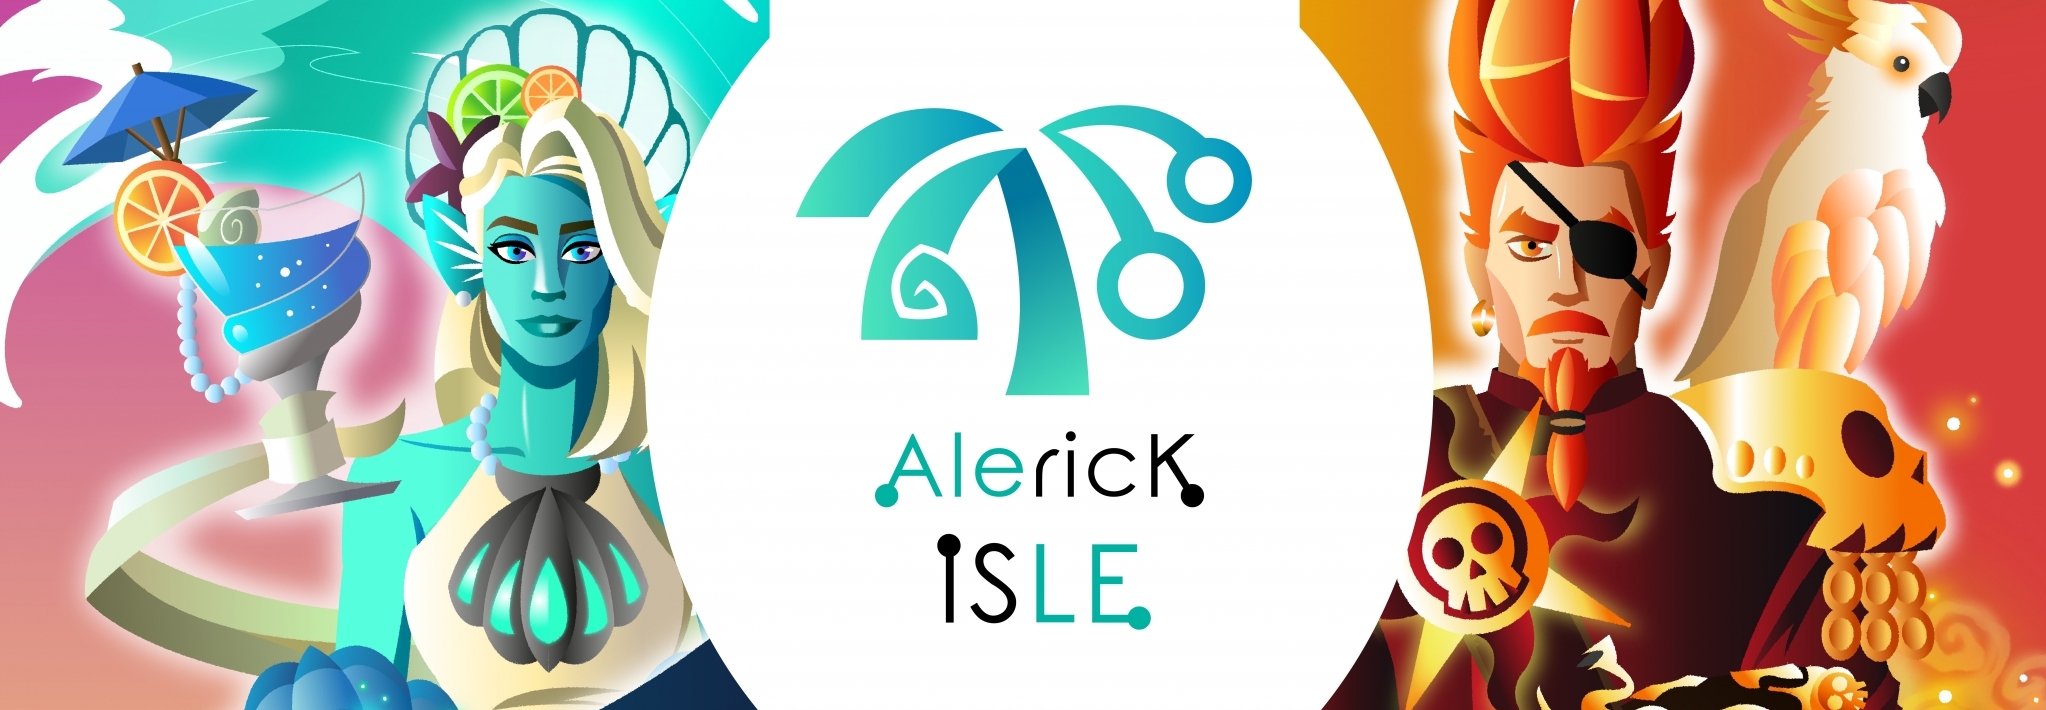 Alerick Isle